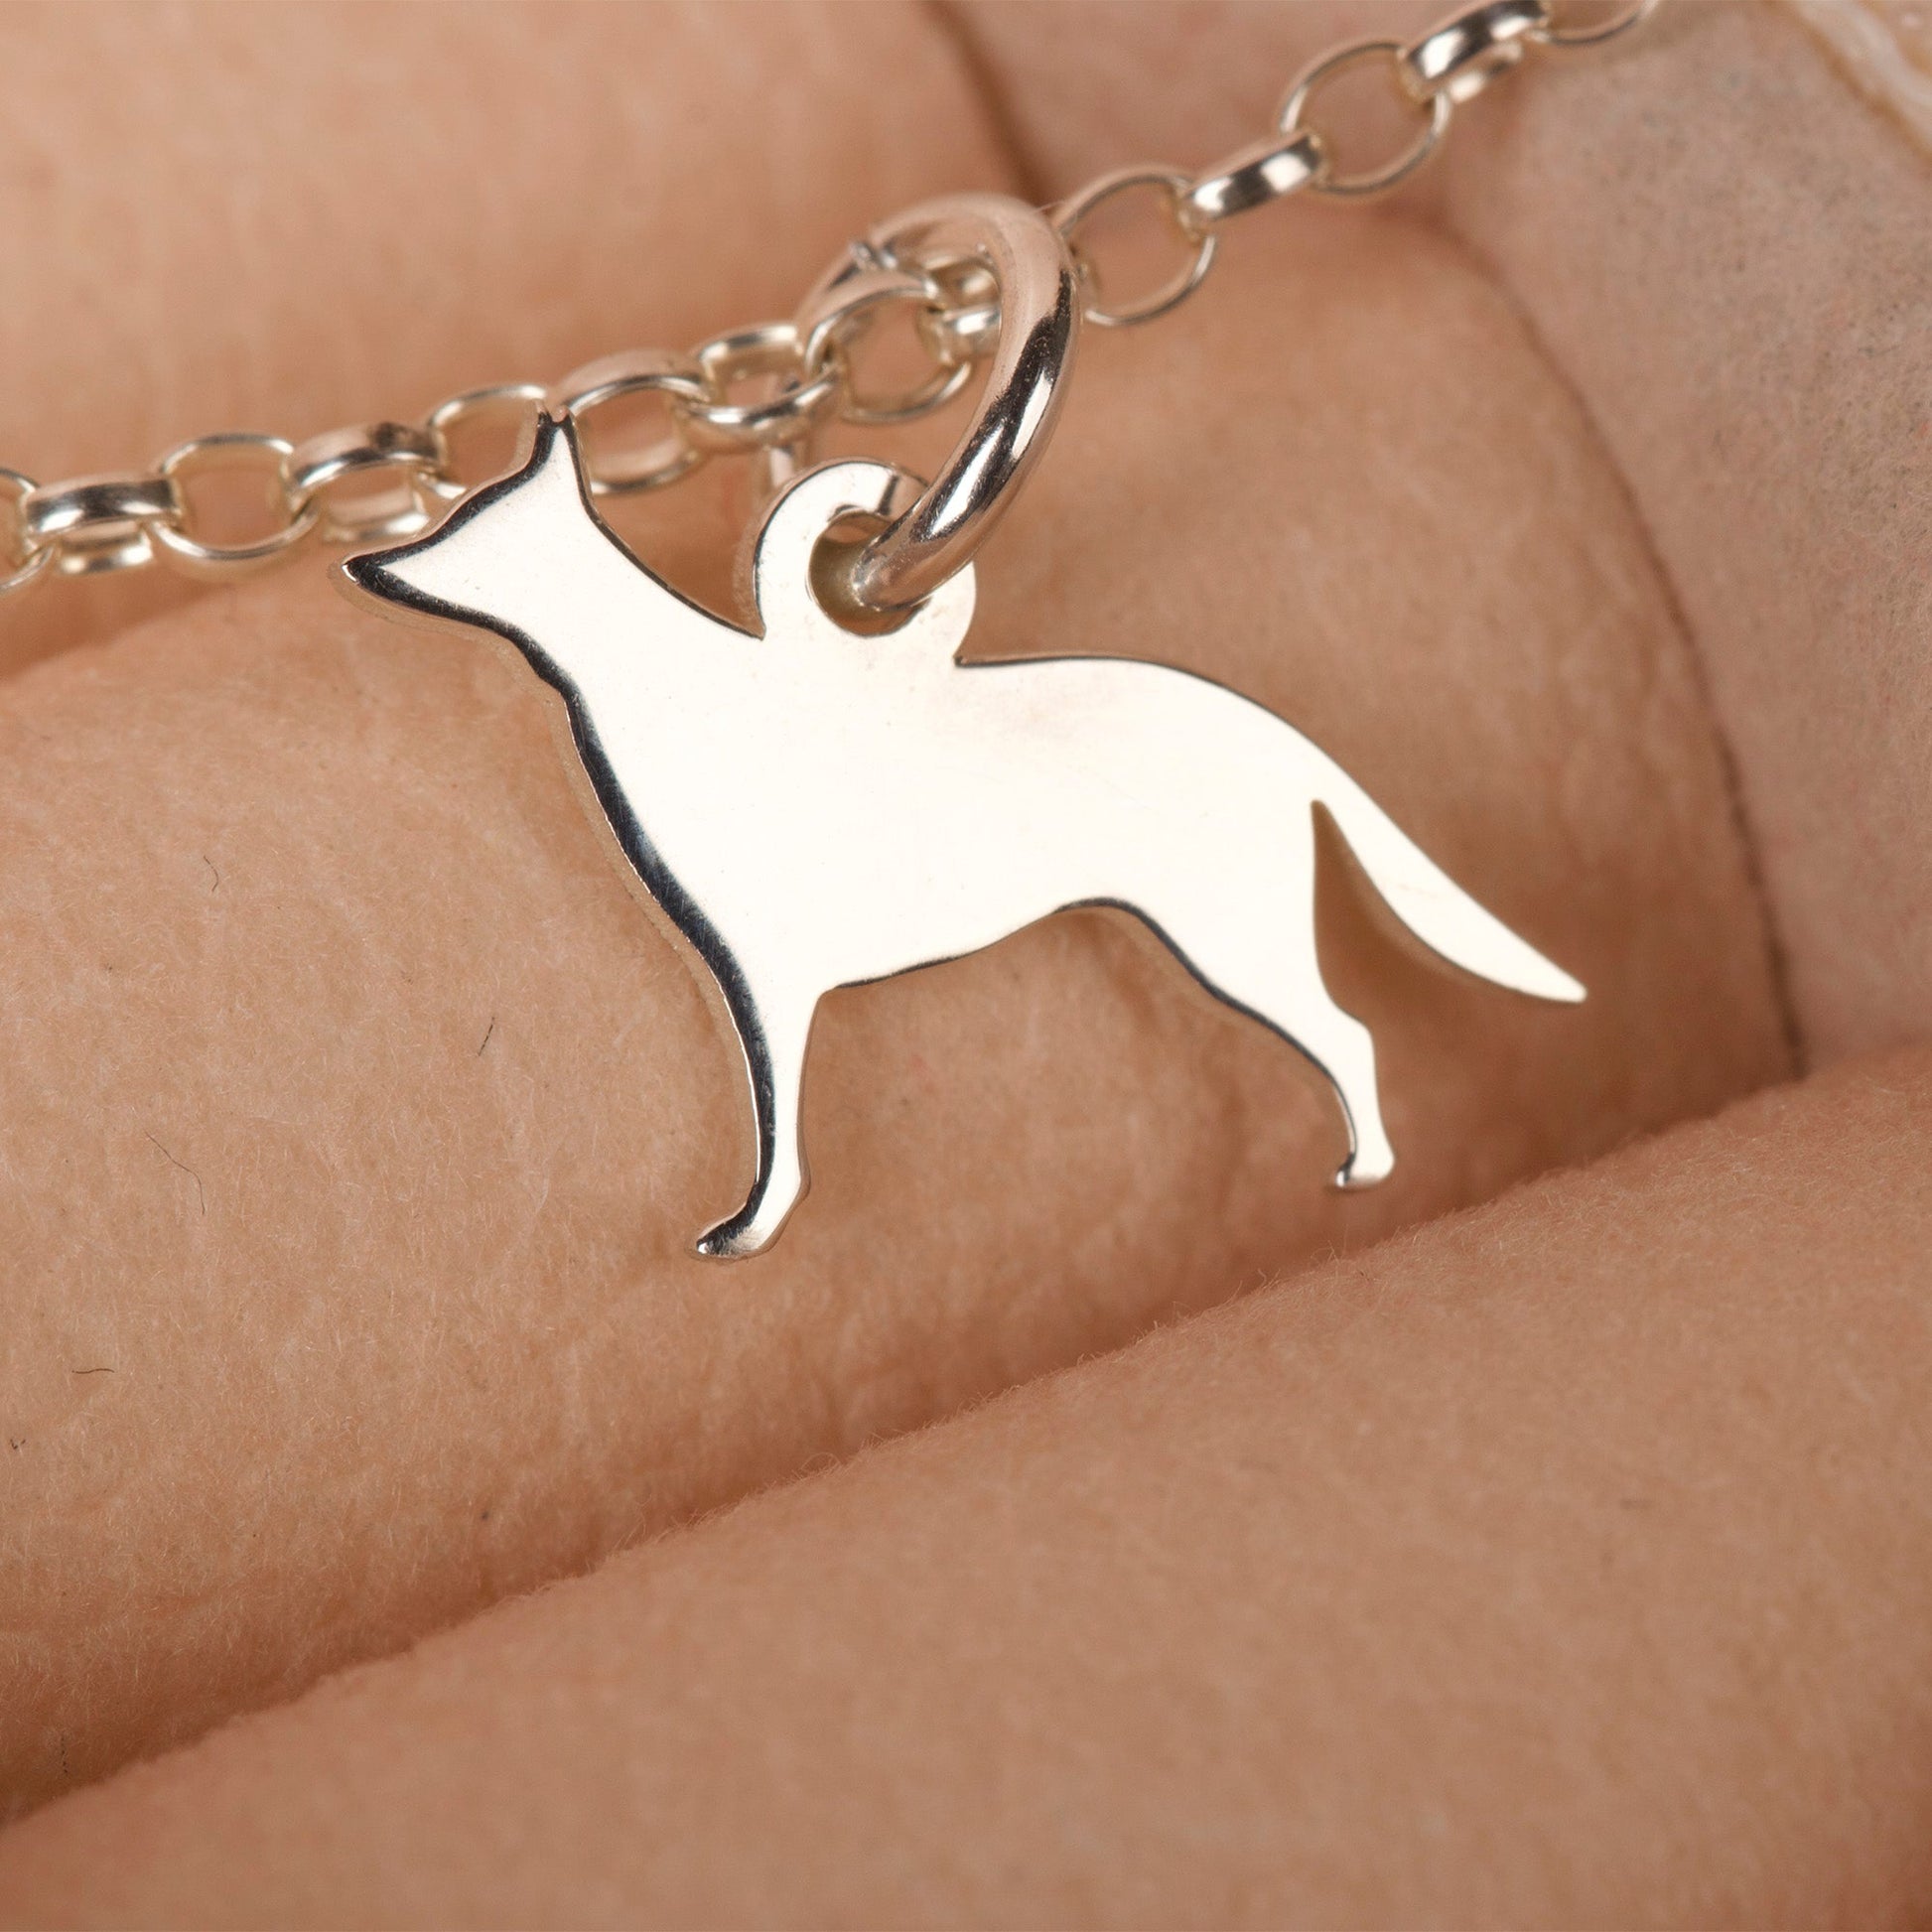 German Shepherd Silhouette Chain Bracelet - Personalised - Sterling Silver - MYLEE London